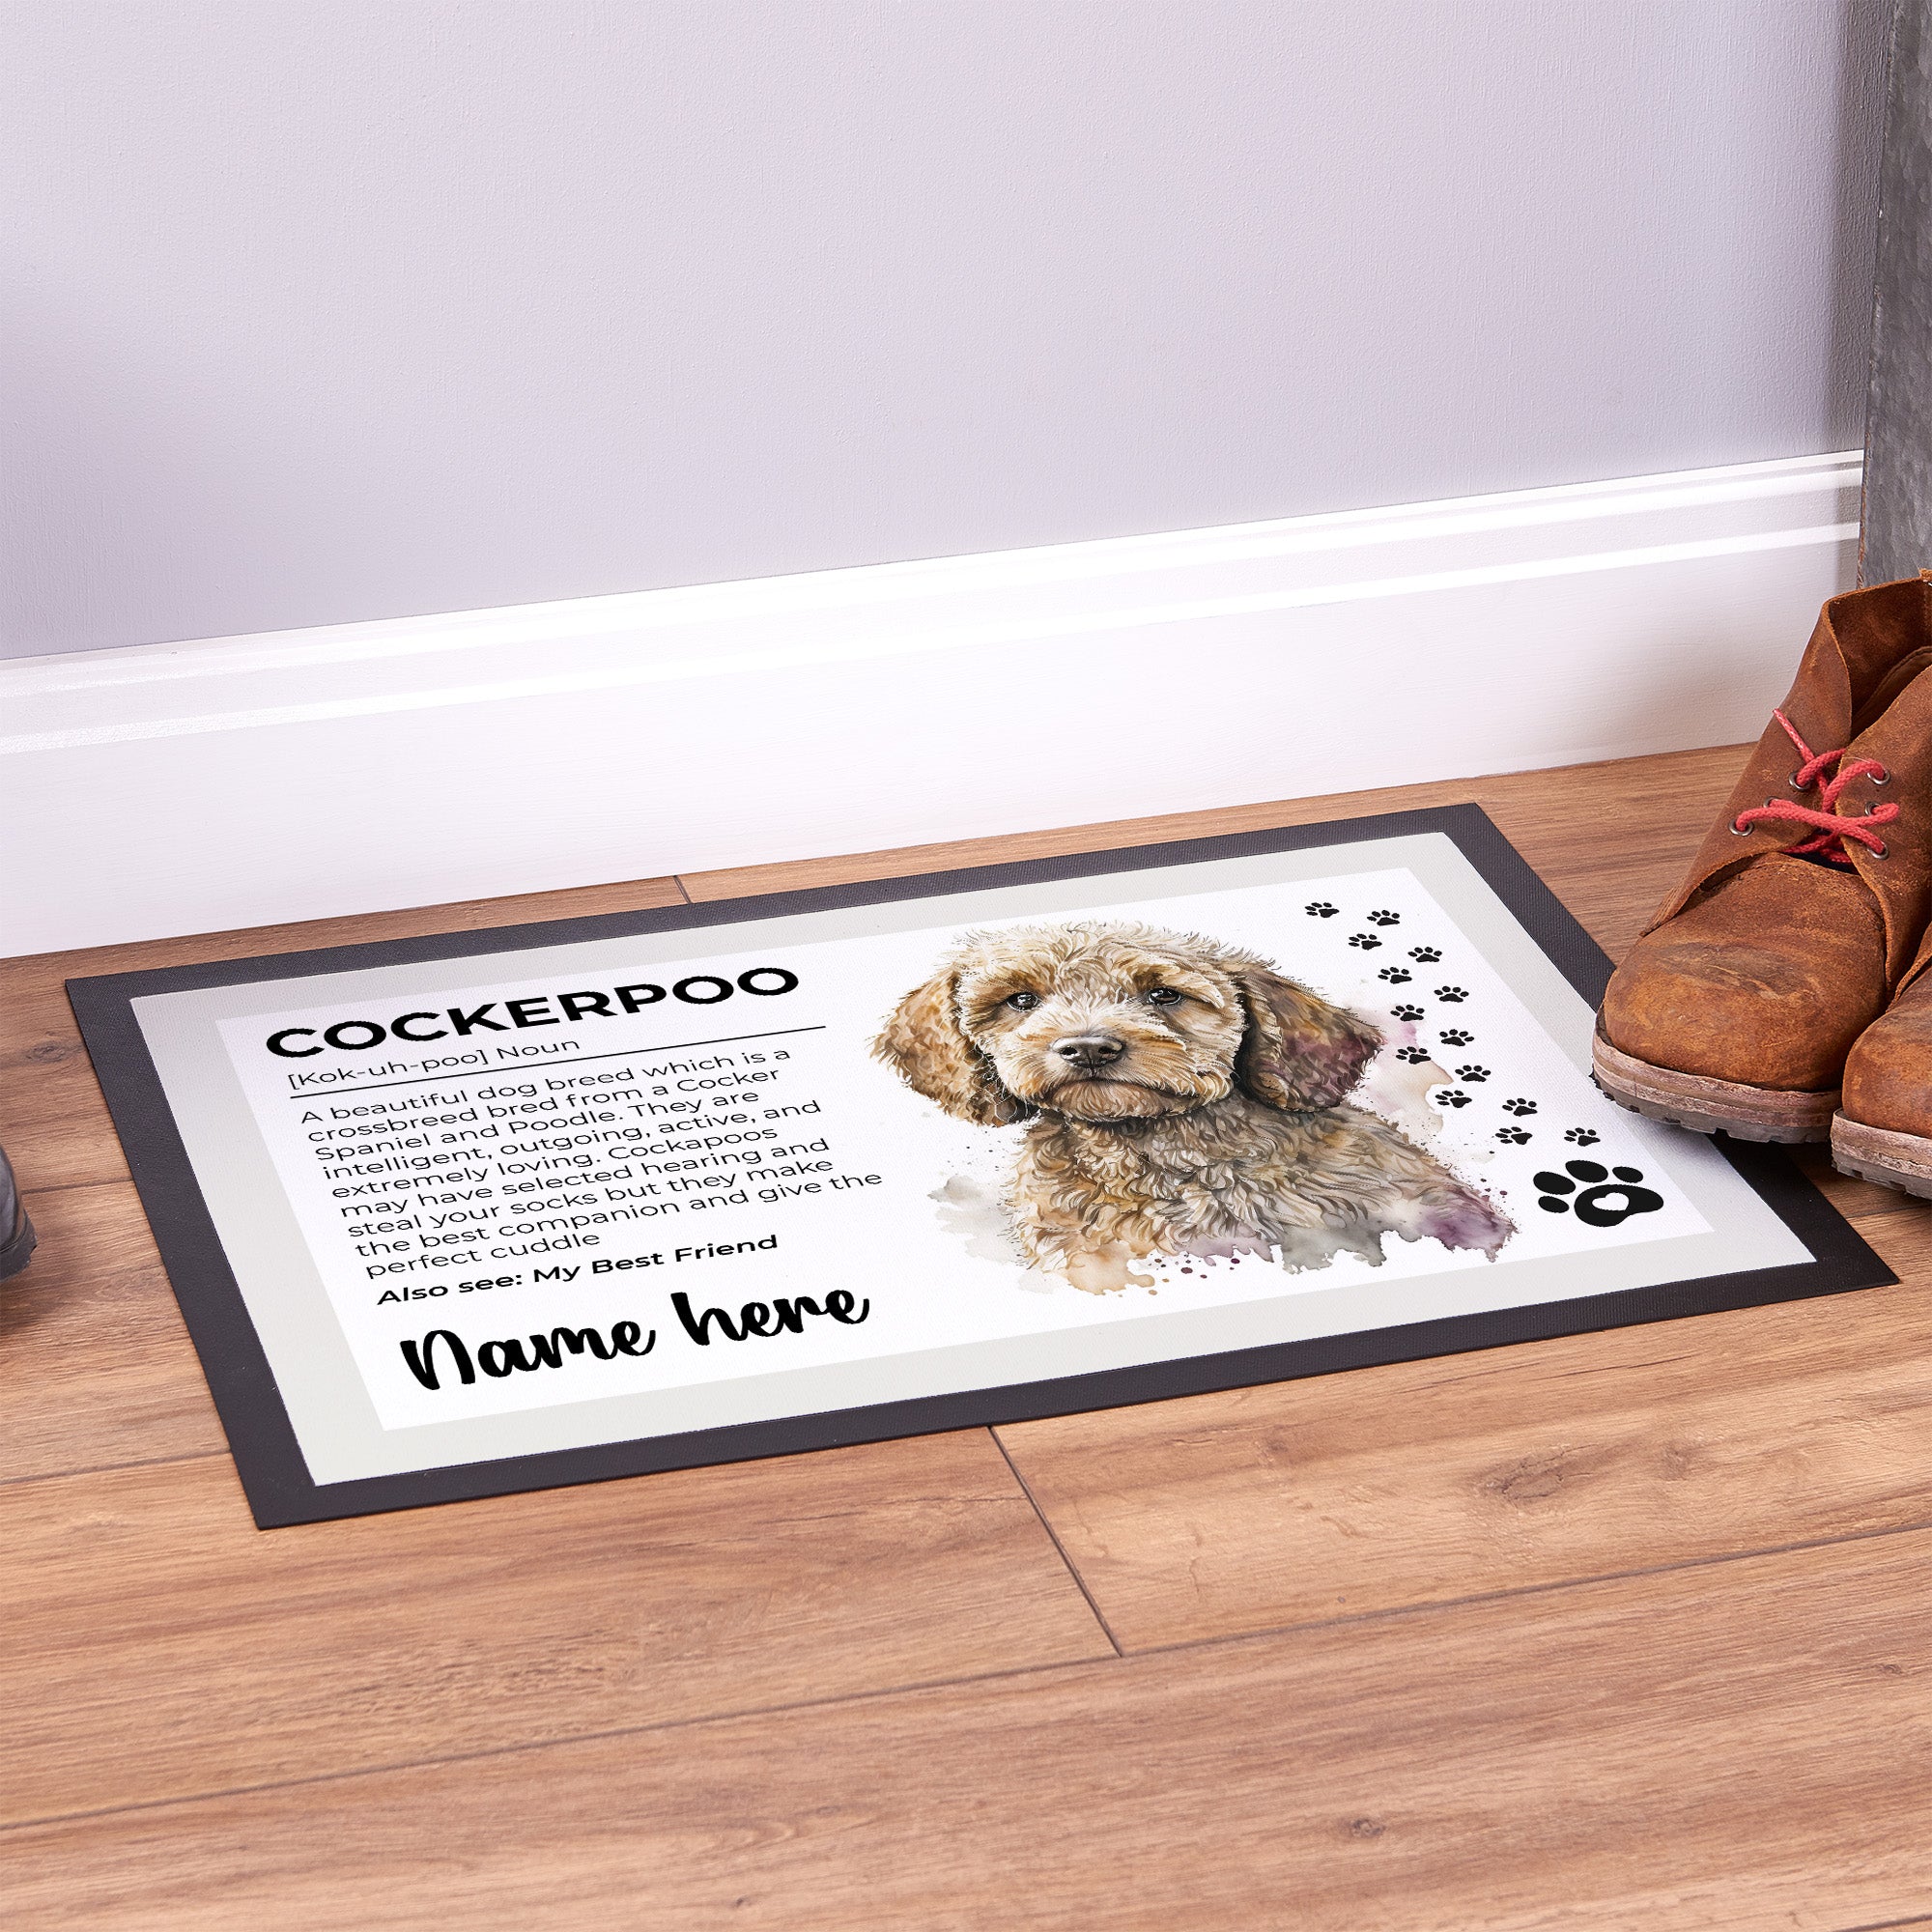 Cockerpoo Noun - Personalised Door Mat - 60cm x 40cm